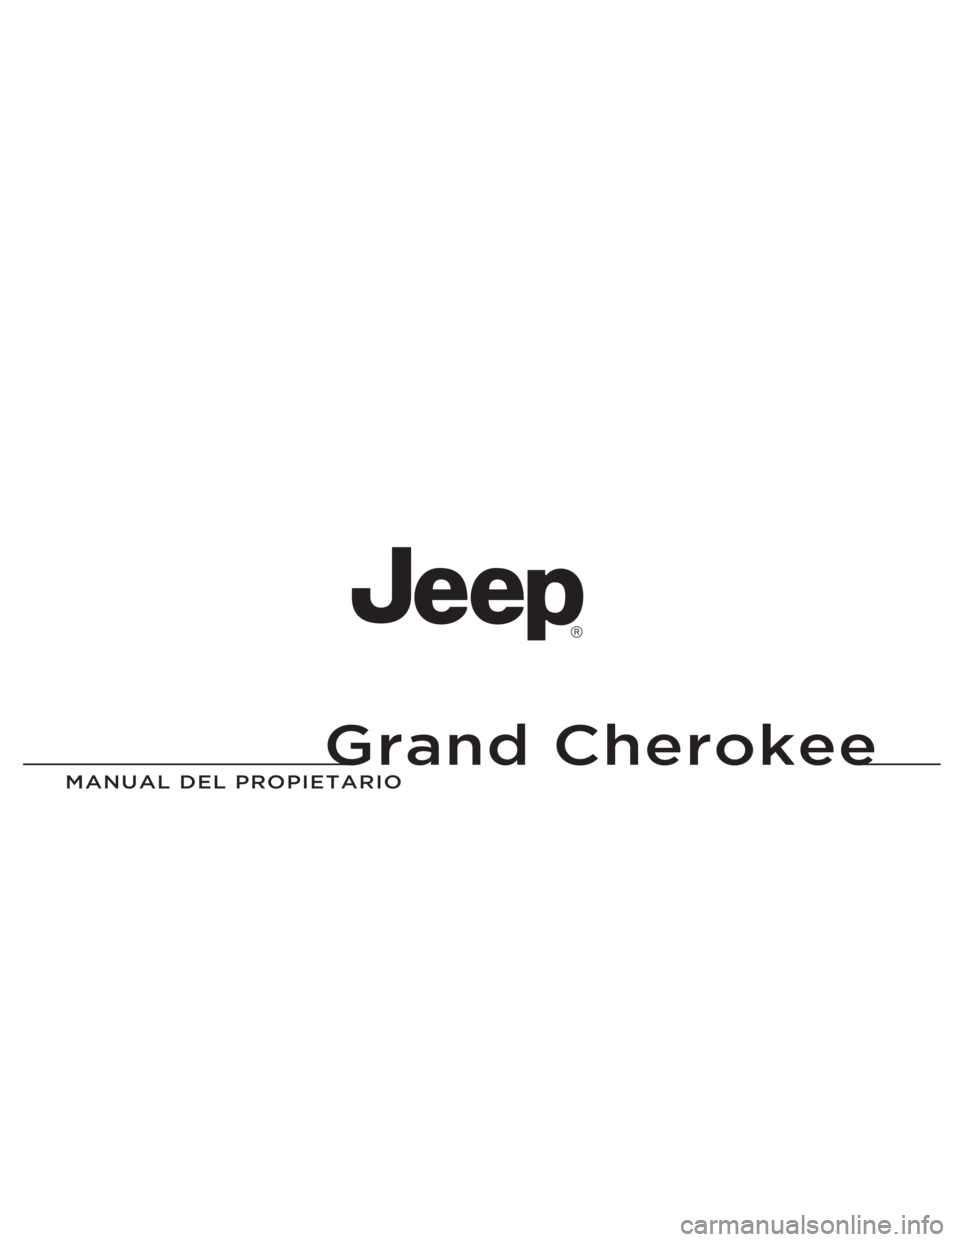 JEEP GRAND CHEROKEE 2013  Manual de Empleo y Cuidado (in Spanish) Grand Cherokee
MANUAL DEL P\fOPIETA\fIO\P
Grand Cherokee
14WK741-126-SPA-AAImpreso en Europa 14 